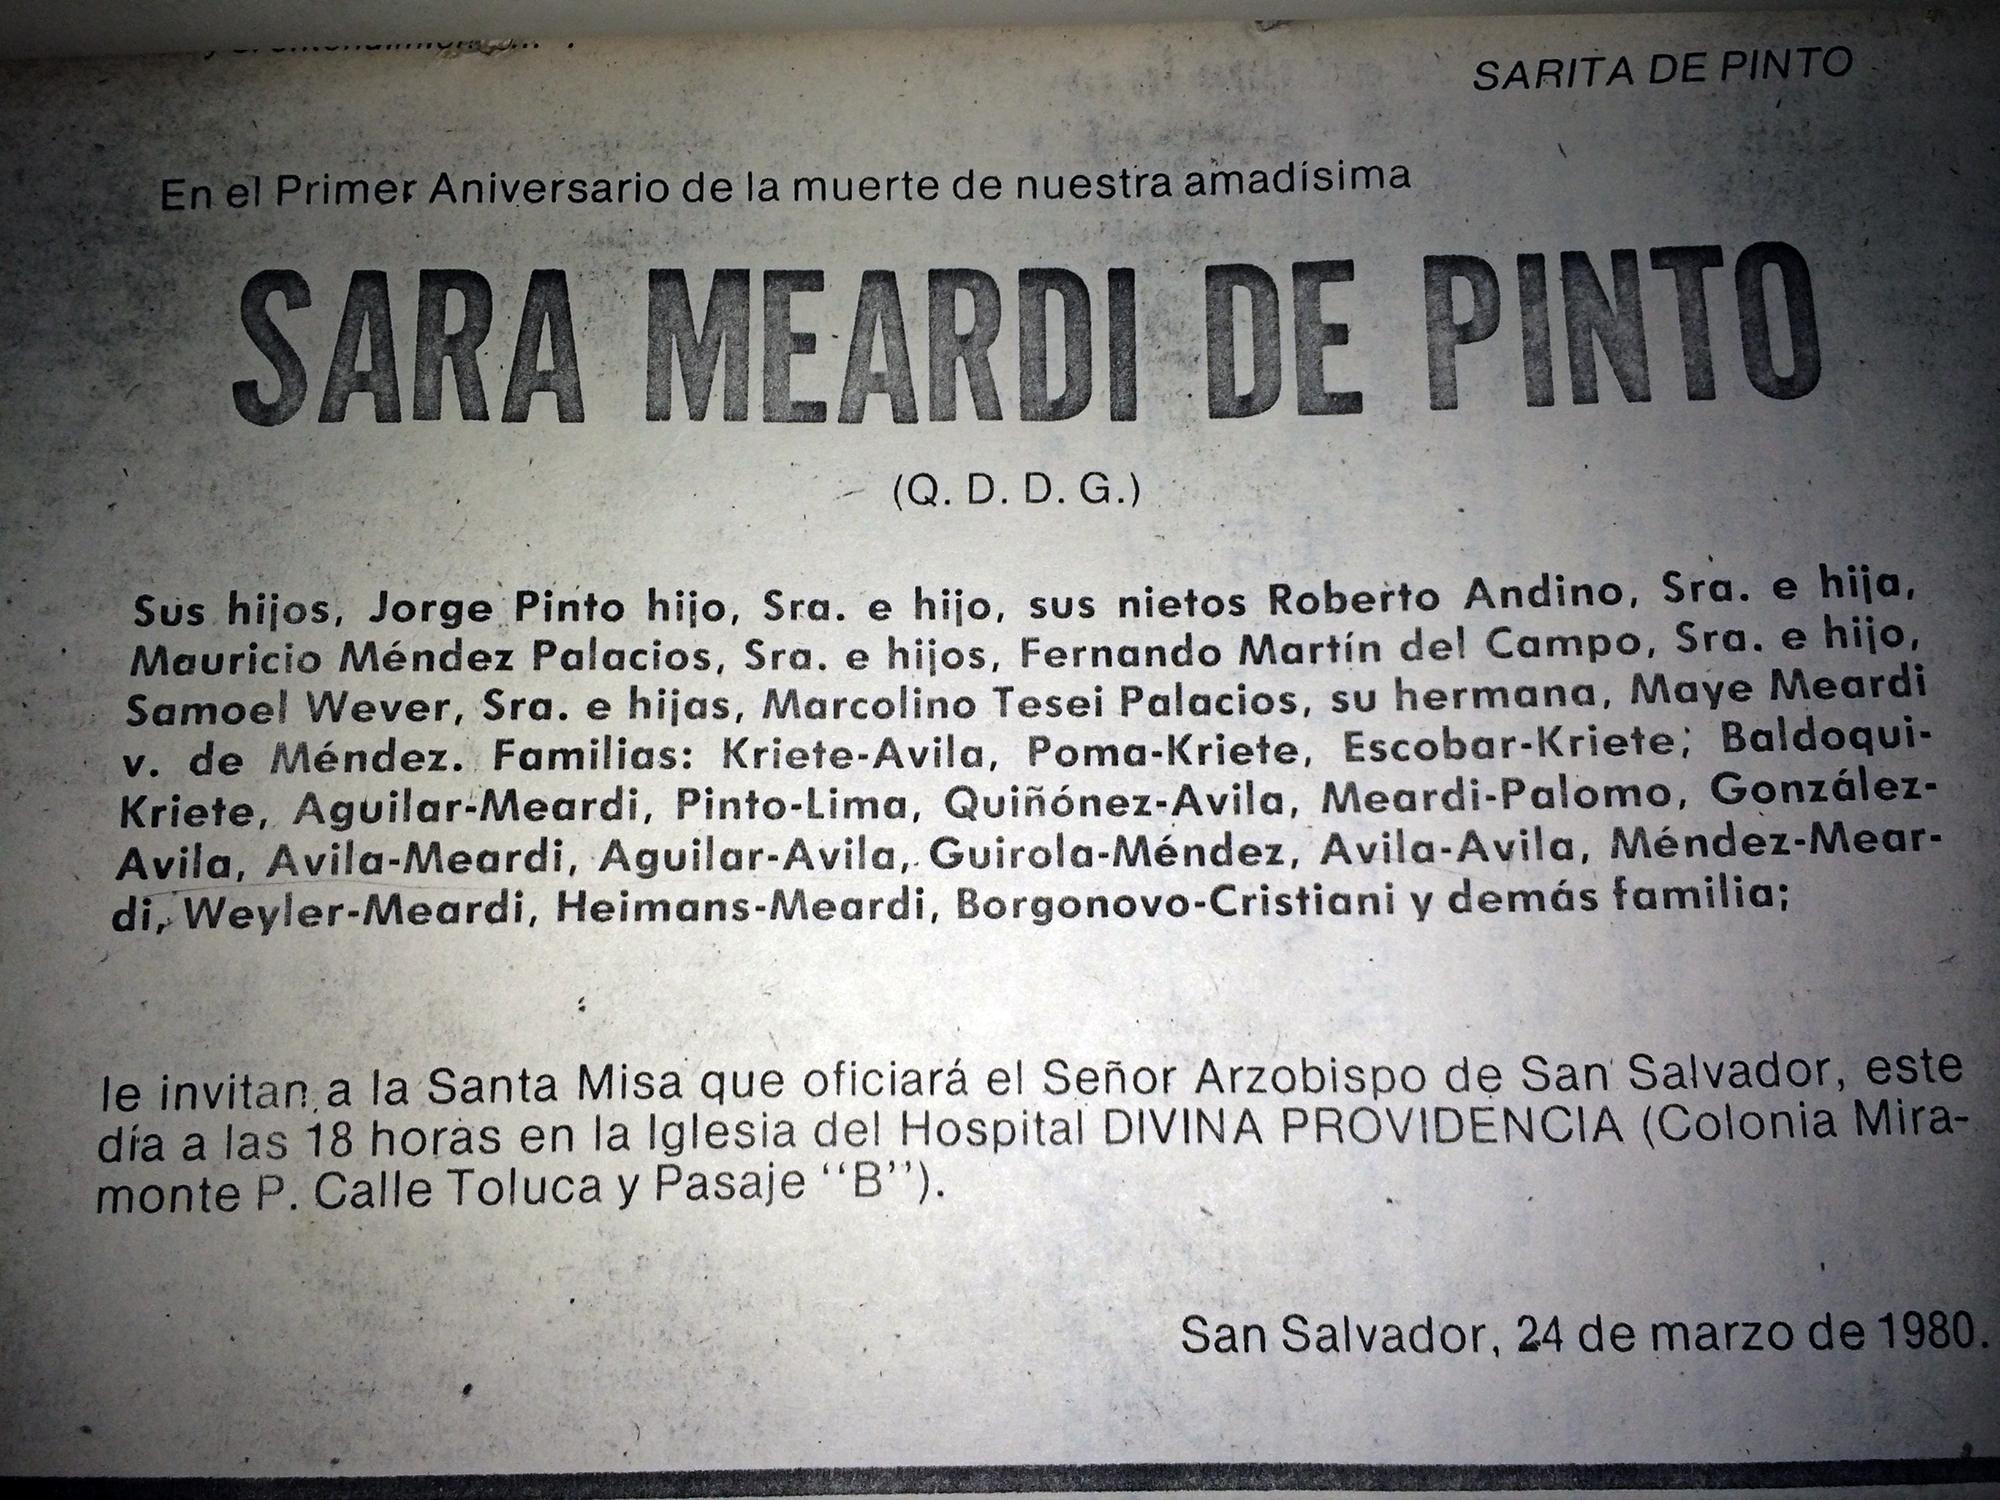 Noticia publicada en La Prensa Gráfica el lunes 24 de marzo de 1980, el día en que Monseñor Romero fue asesinado. Foto de archivo de El Faro.